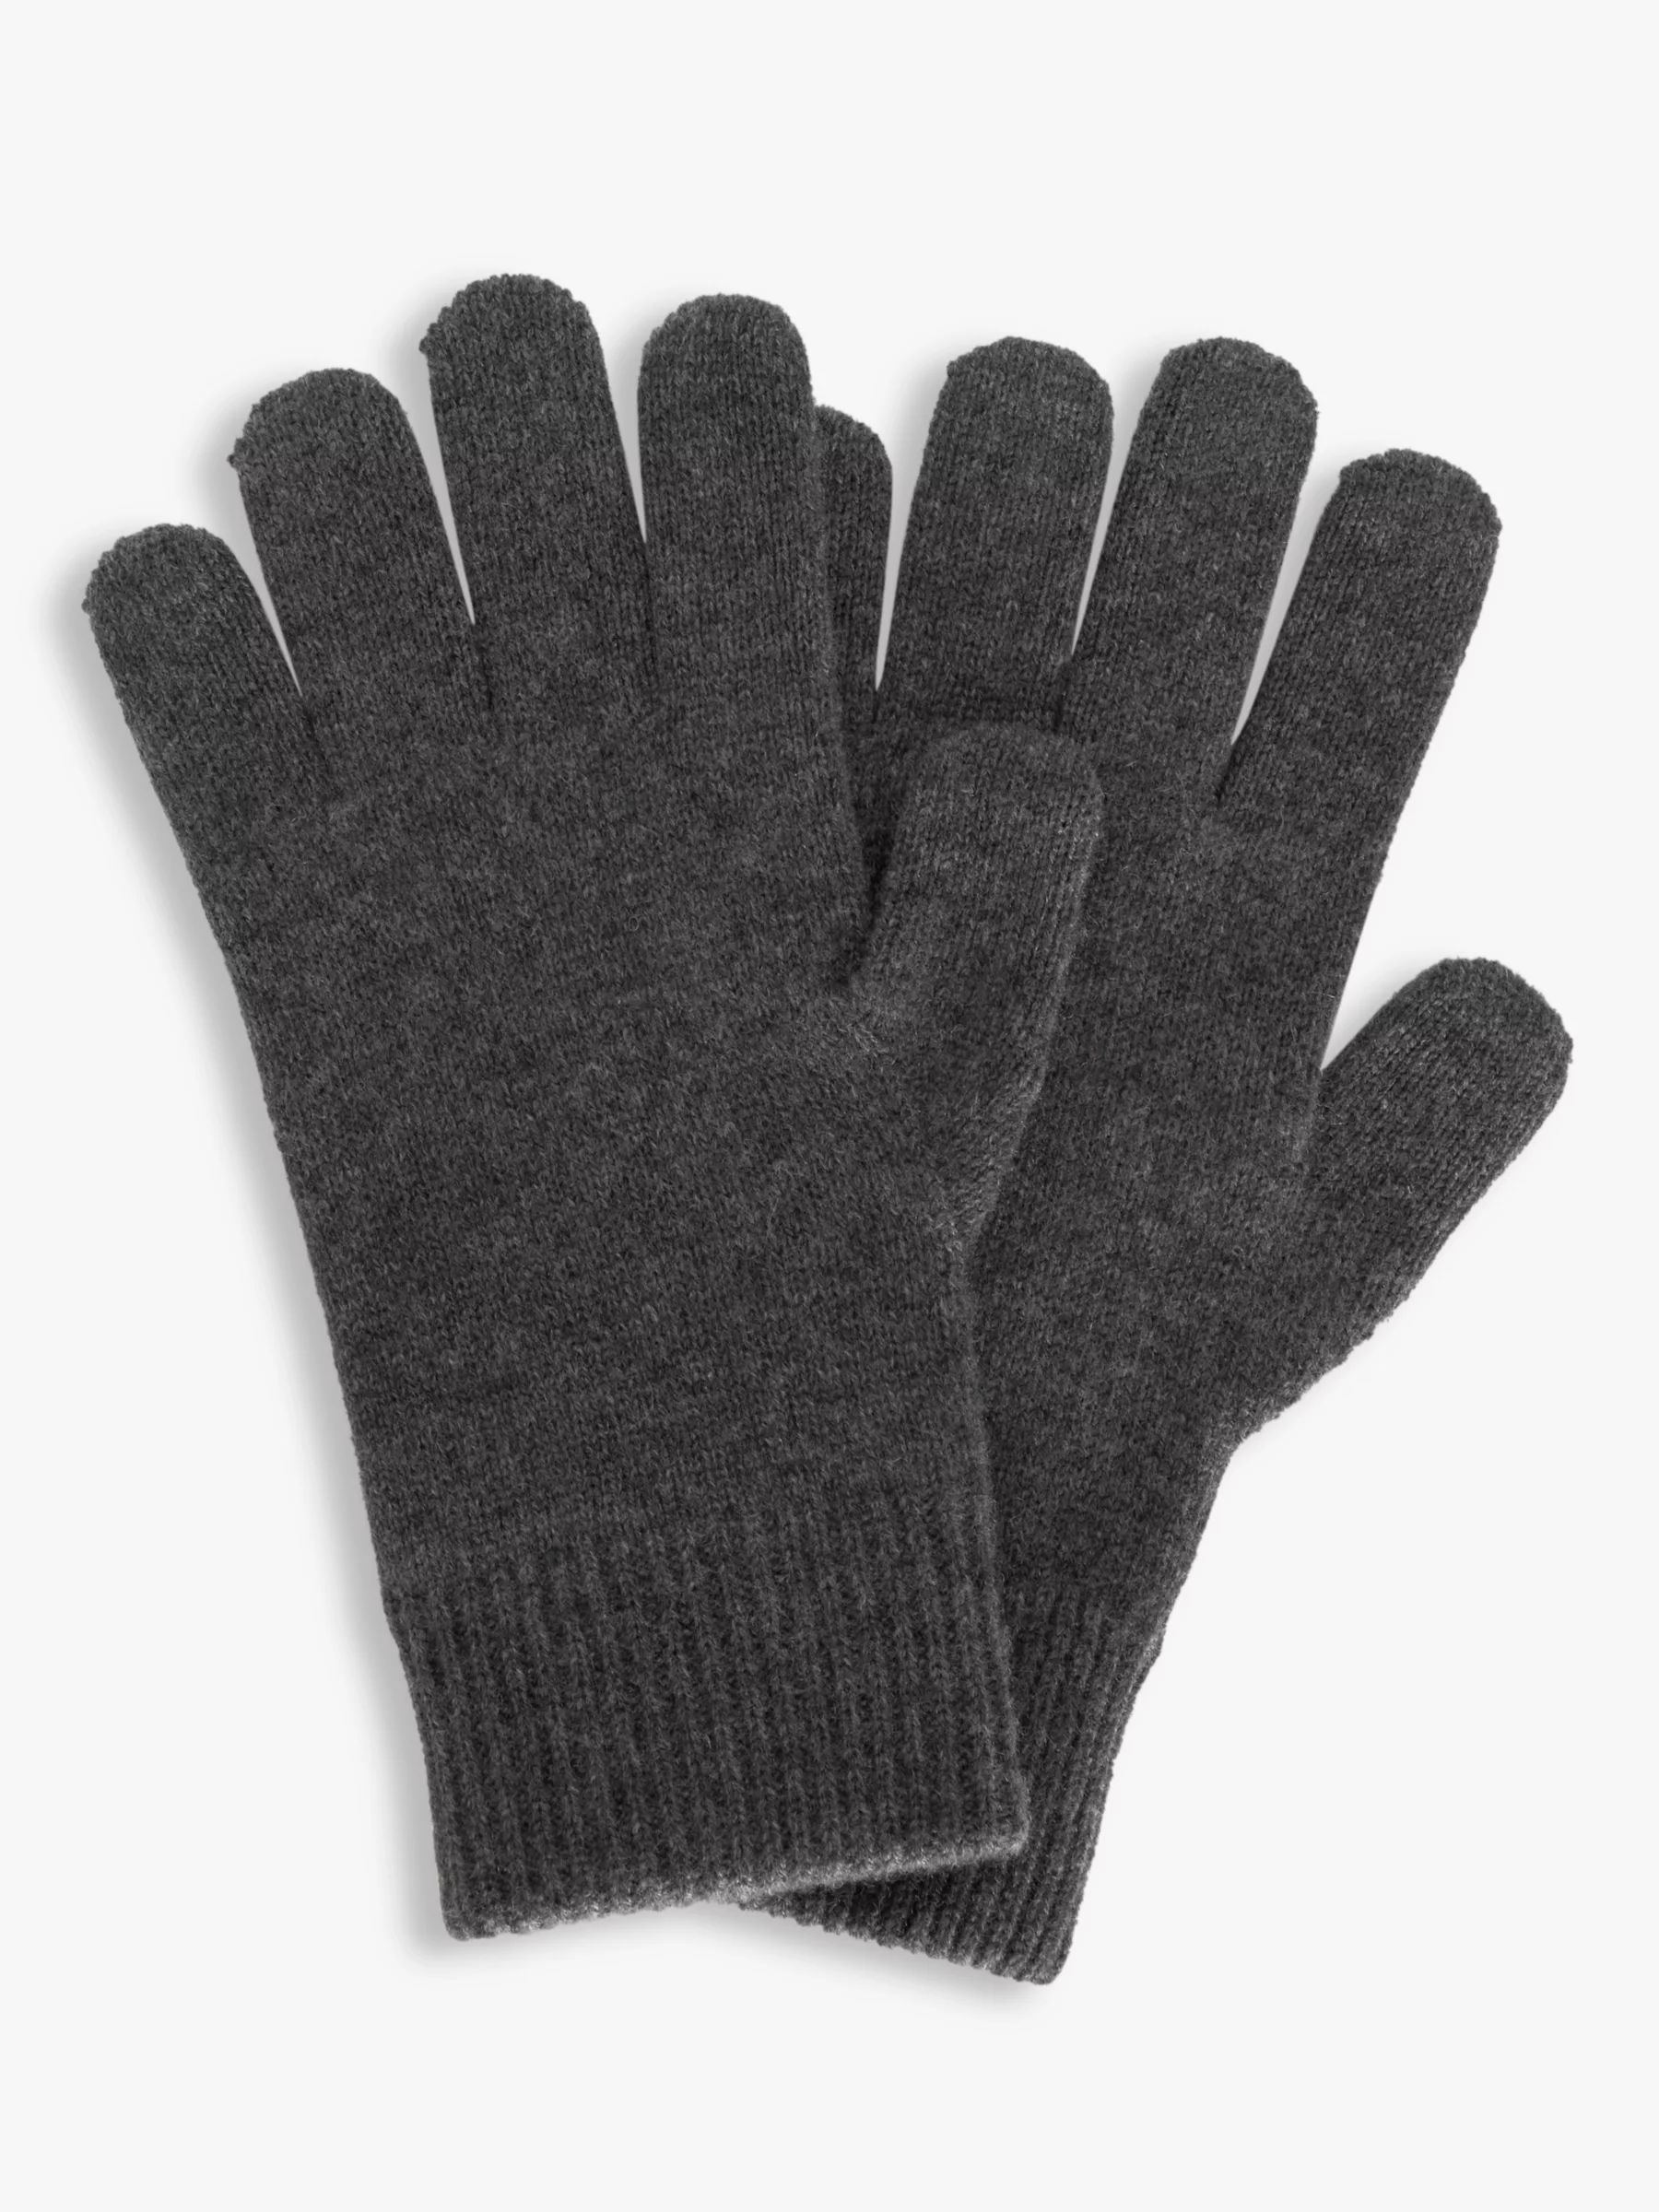 John Lewis Cashmere Gloves, Charcoal | John Lewis (UK)